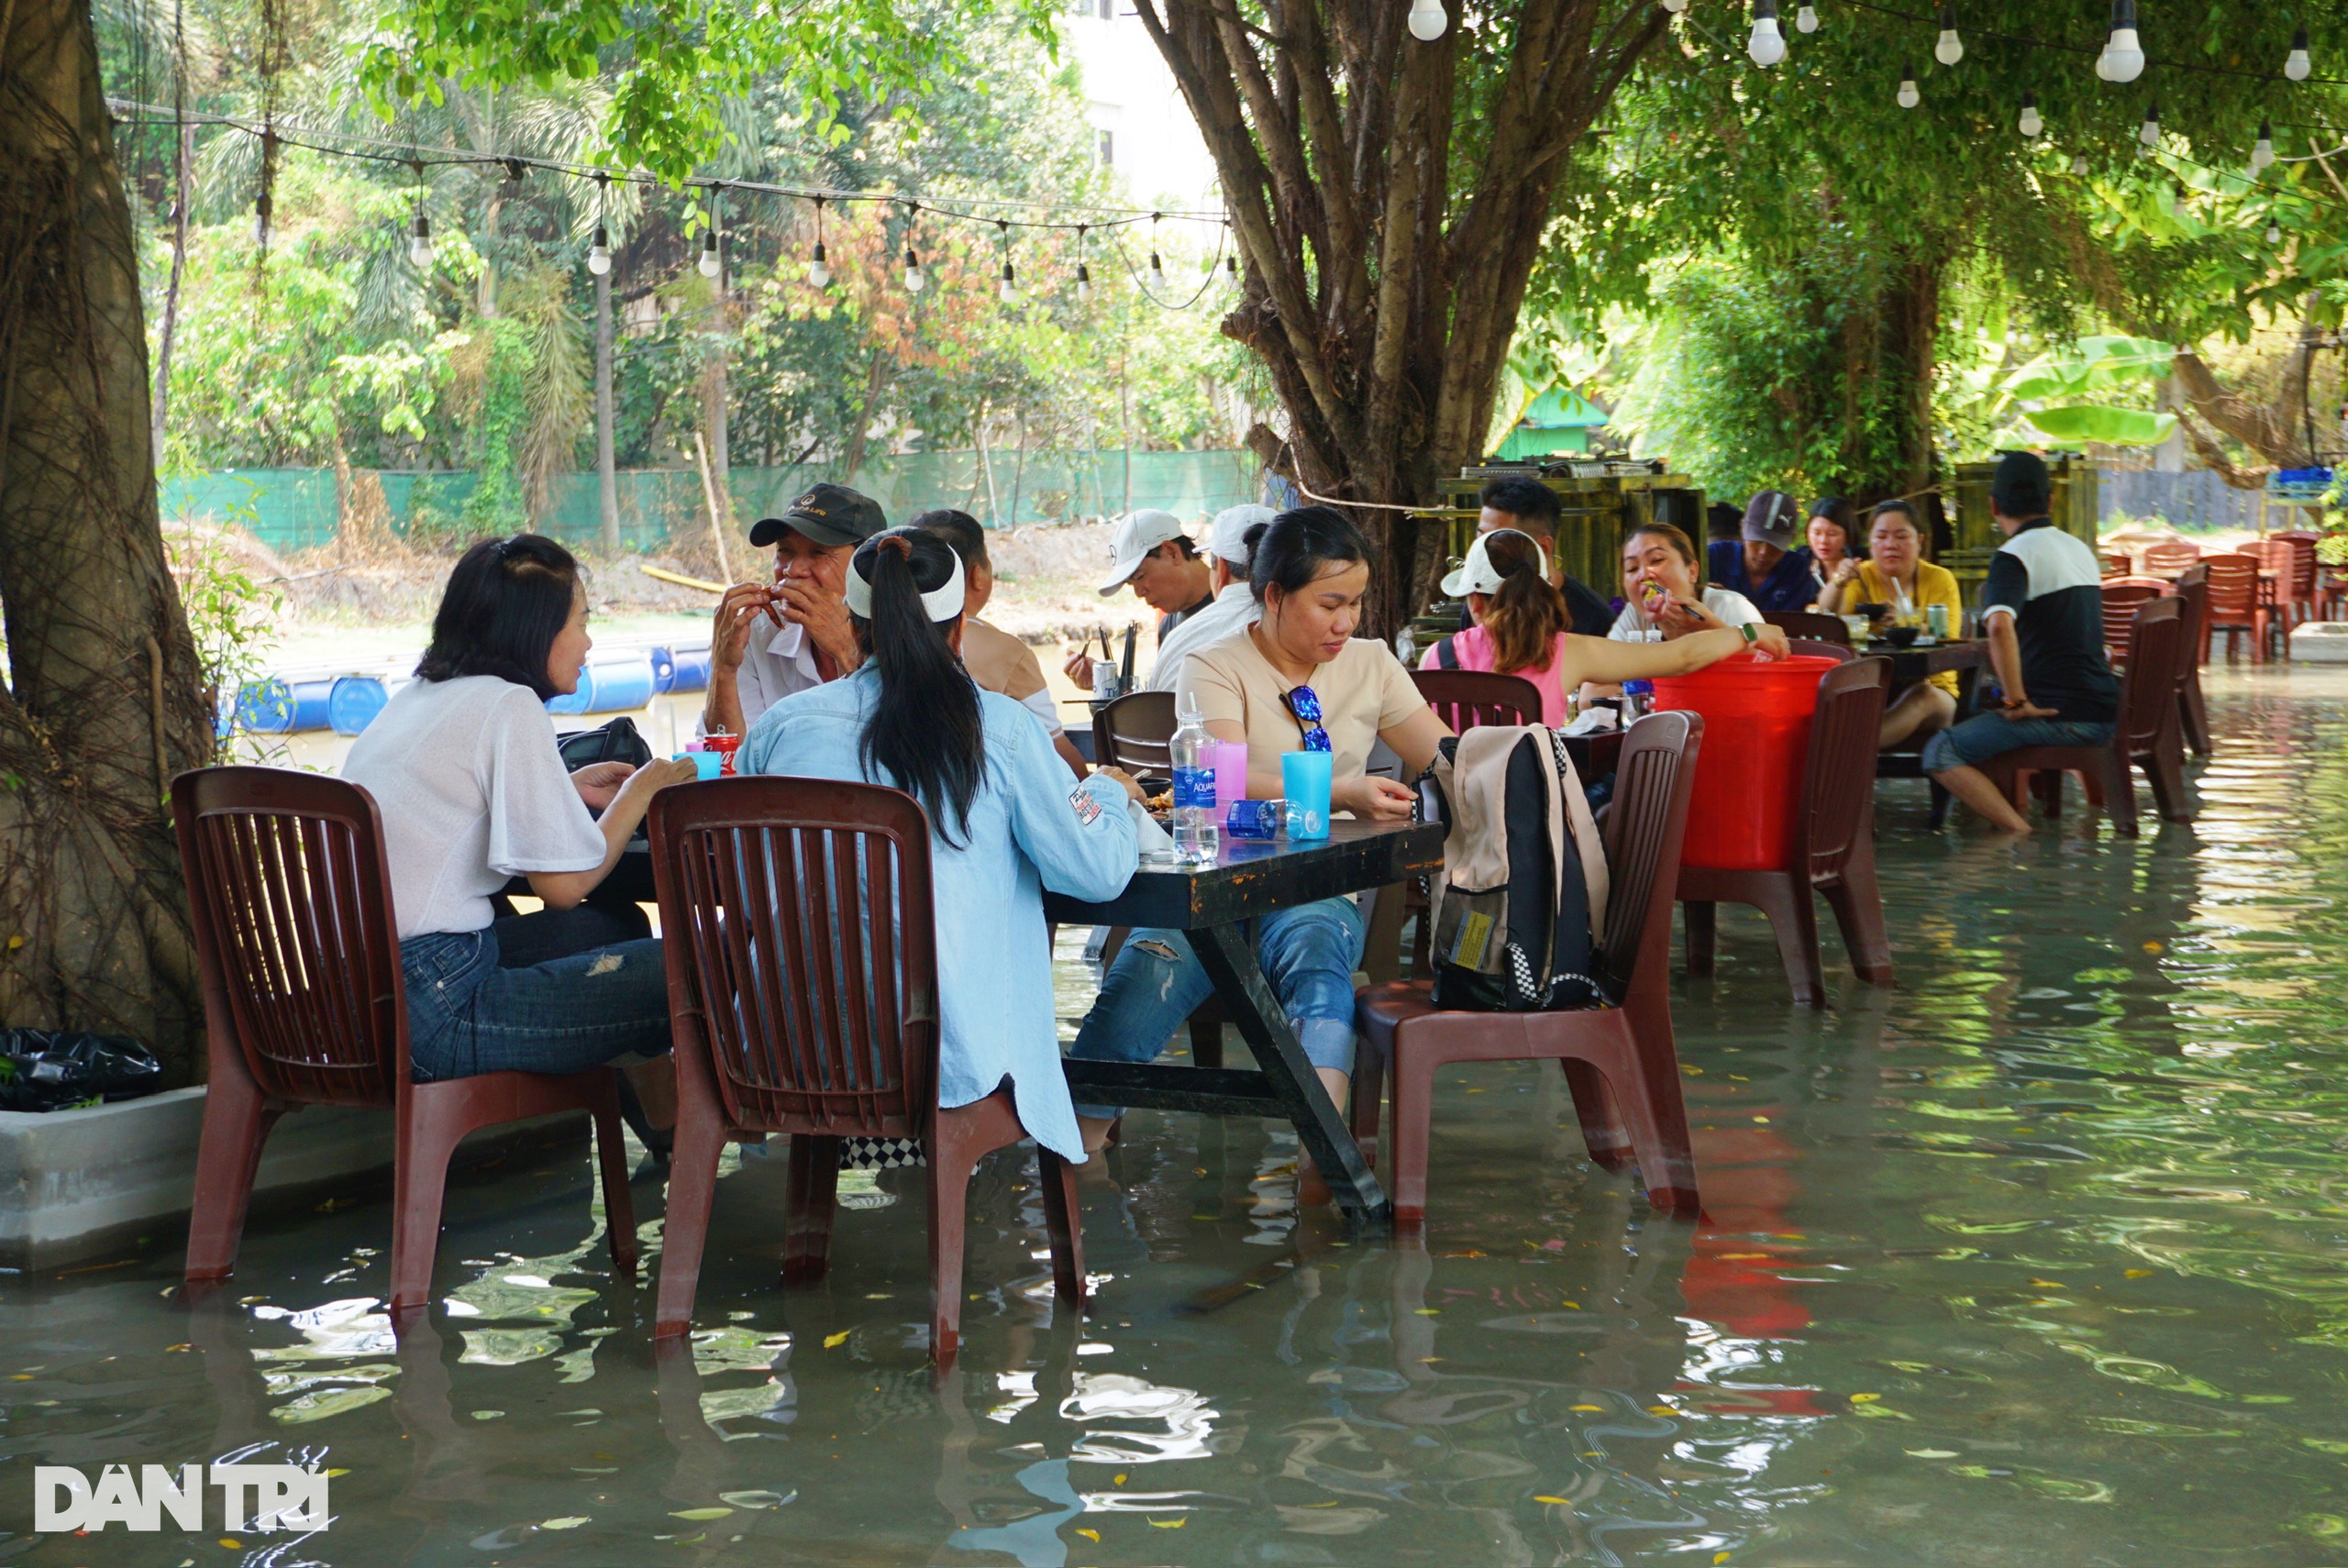 View - Quán ăn ngập lụt ở TPHCM gây tranh cãi: Khách sợ nước dơ, chủ quán nói gì? | Báo Dân trí